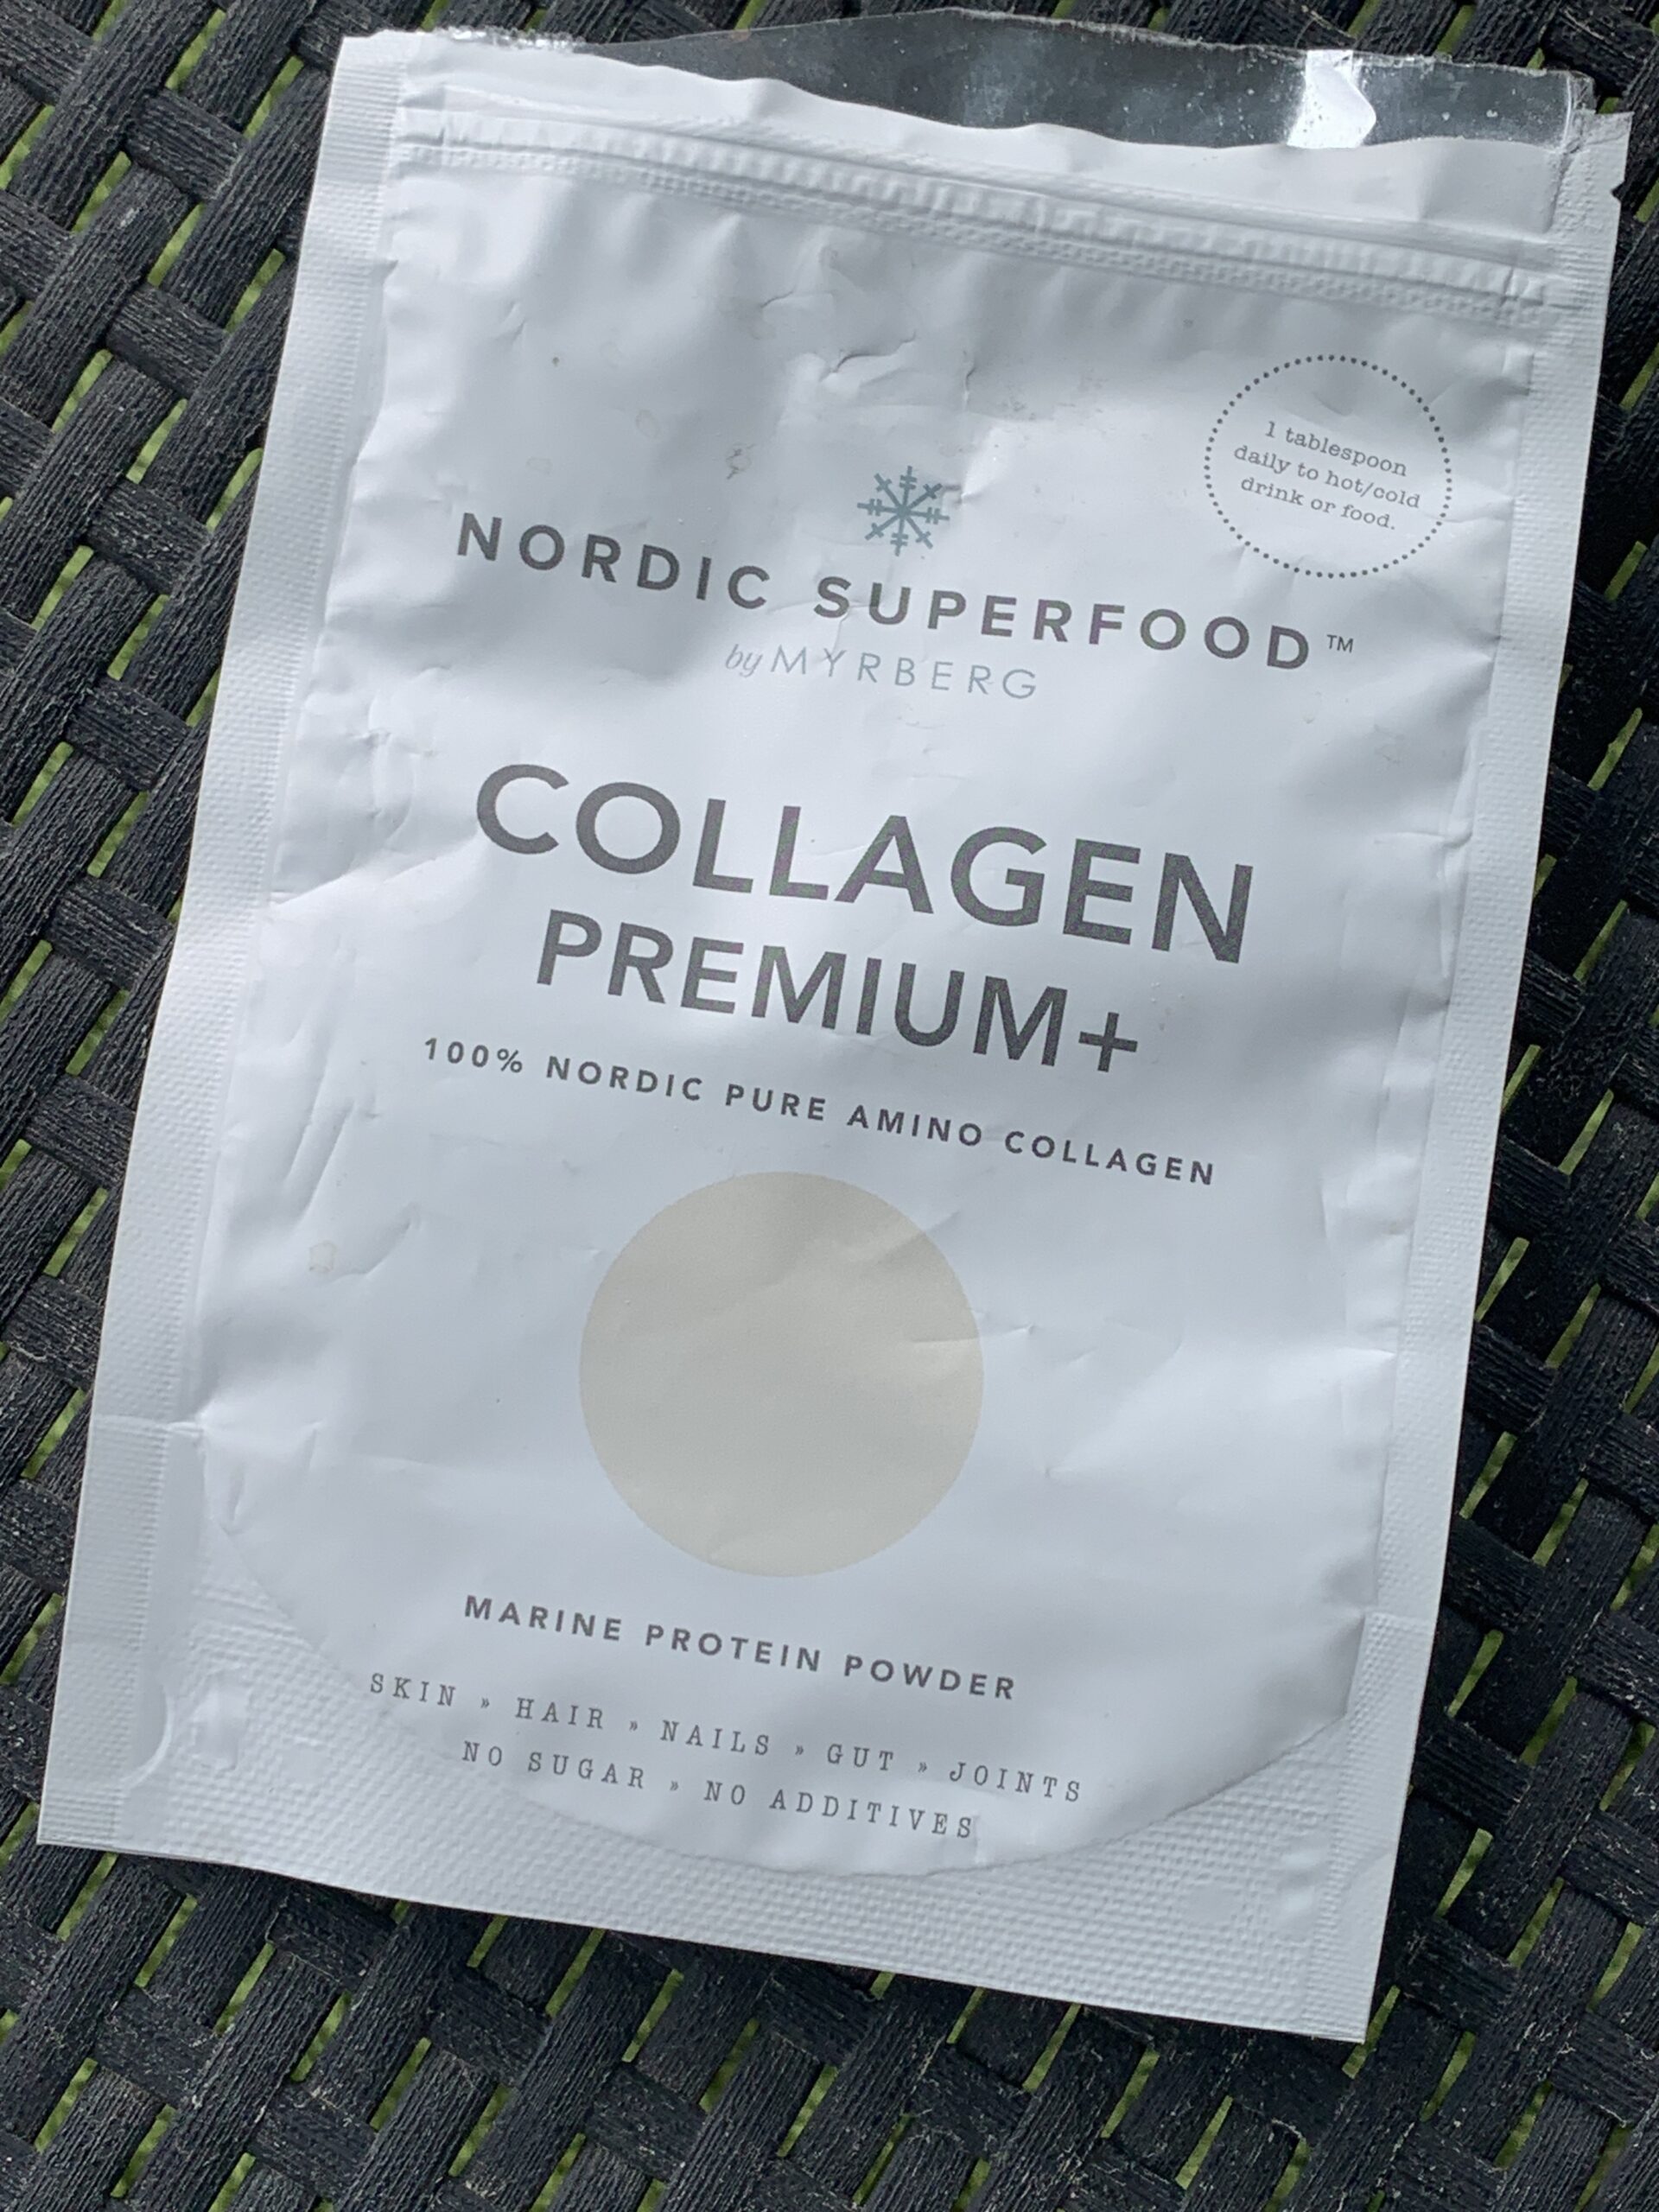 Nordic superfood collagen premium+